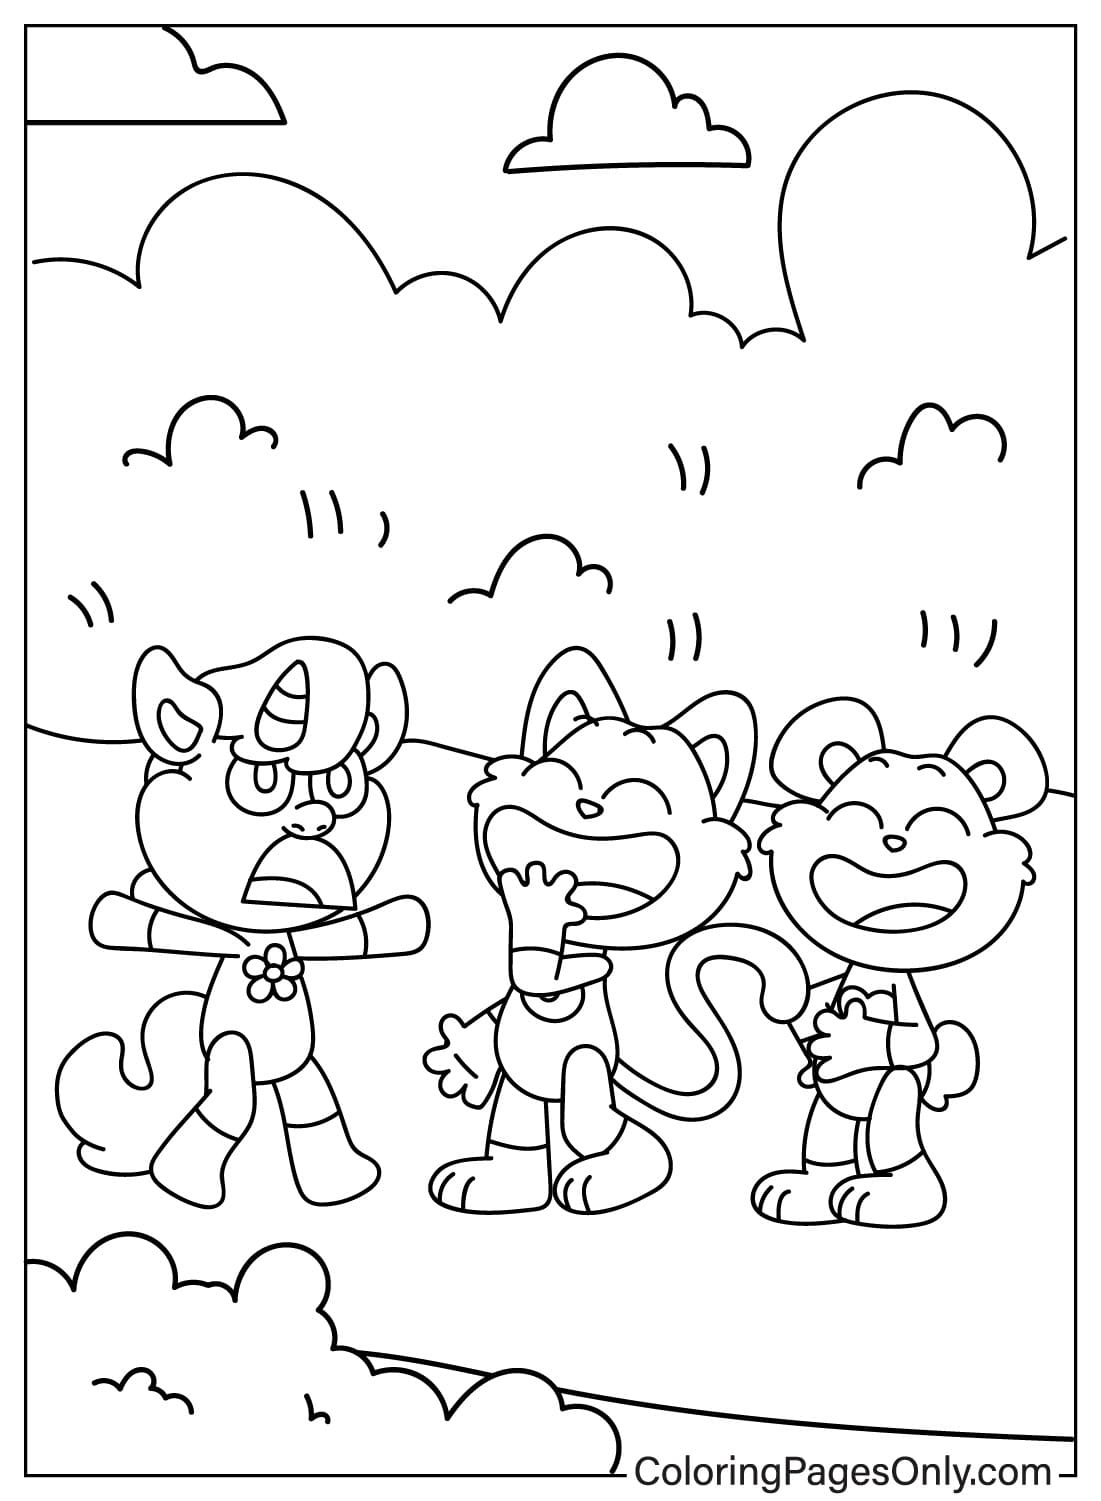 Página para colorir CraftyCorn com Bobby BearHug e Hoppy Hopscotch de Smiling Critters